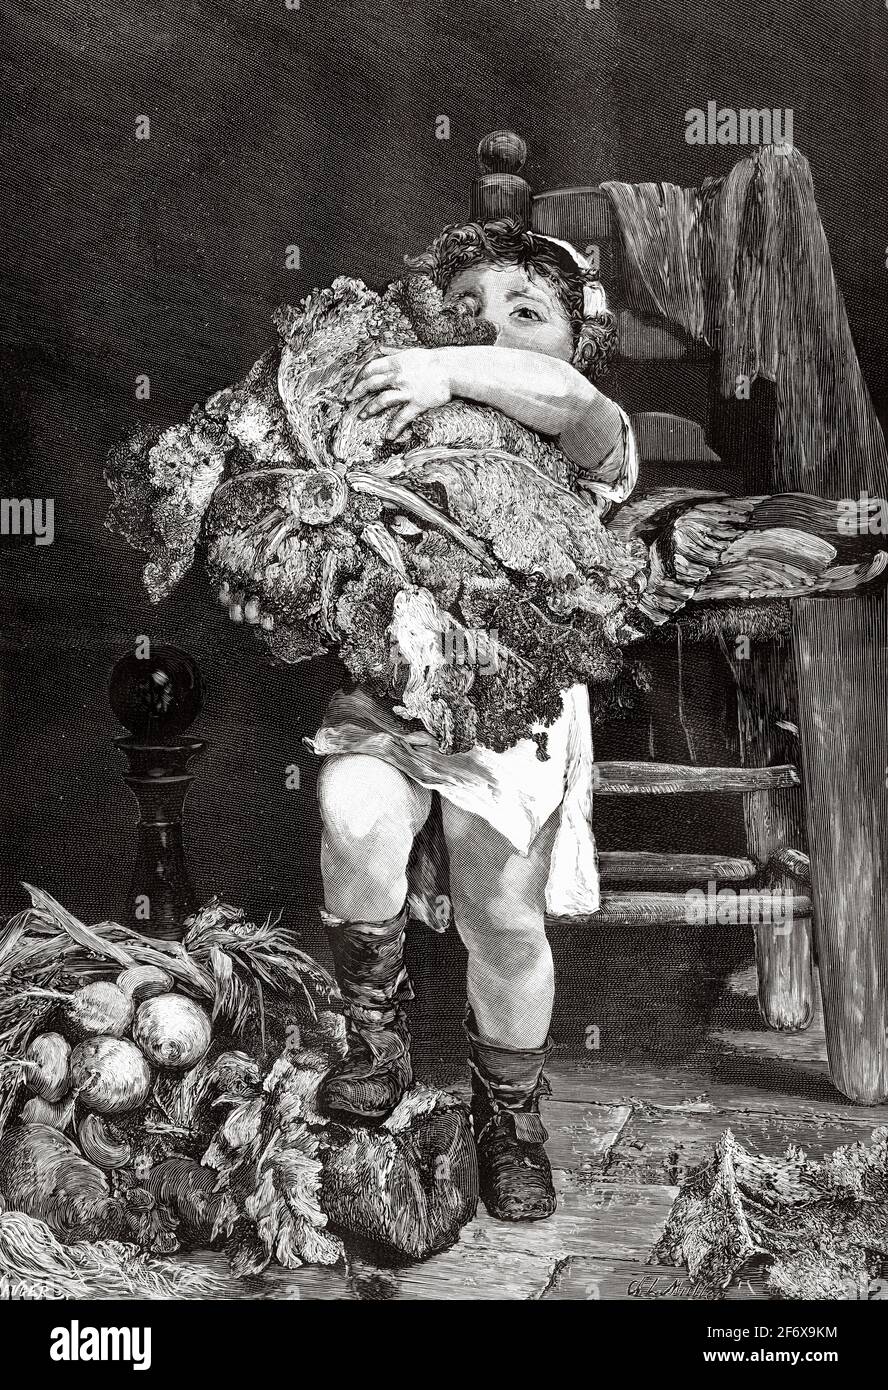 Das kleine Mädchen aus dem 19. Jahrhundert versucht, einen großen Kohl in ihrer Küche zu heben, um ihrer Mutter beim Kochen zu helfen. Alte Illustration aus dem 19. Jahrhundert von El Mundo Ilustrado 1879 Stockfoto